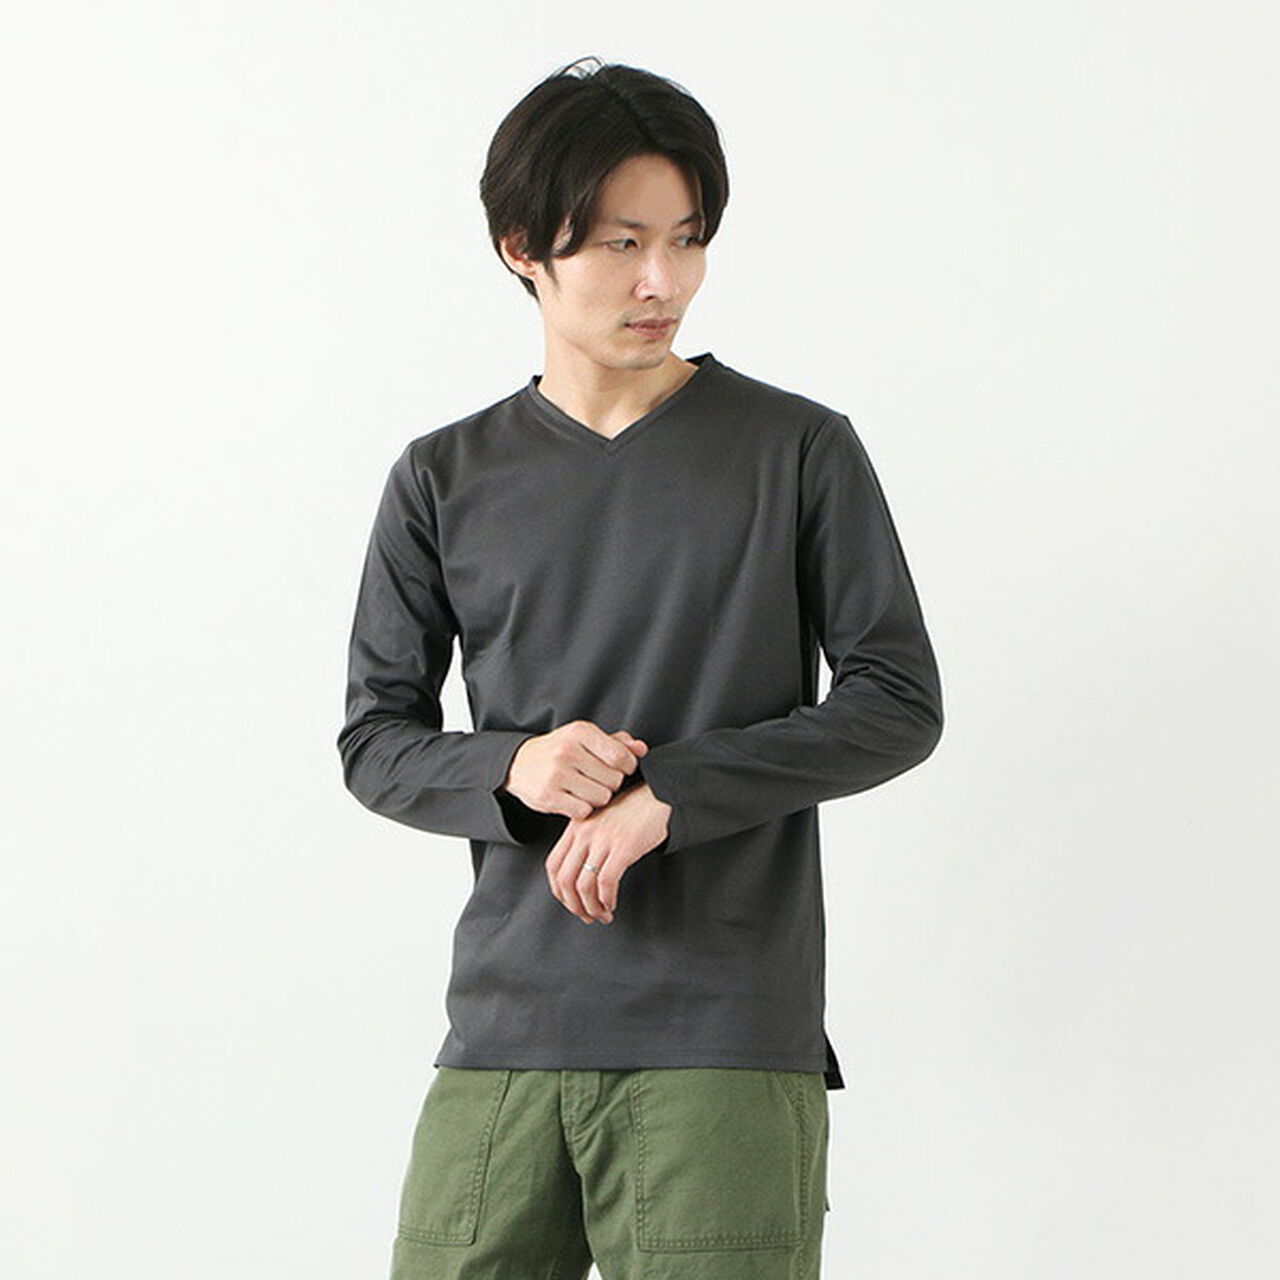 Tokyo Made V-Neck Long Sleeve Dress T-Shirt,Charcoal, large image number 0